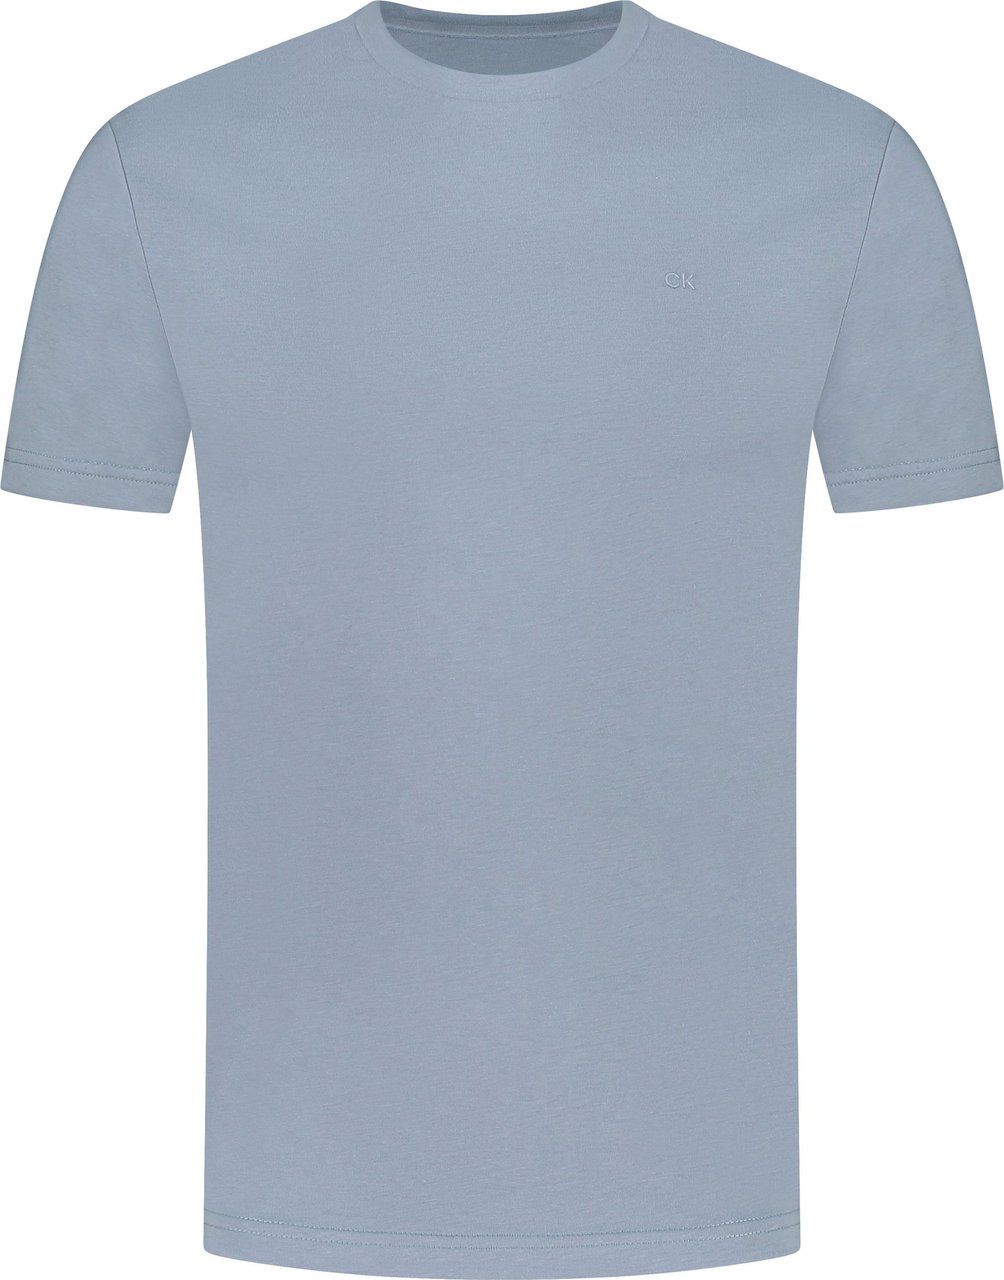 Calvin Klein T-shirt Grijs Grijs